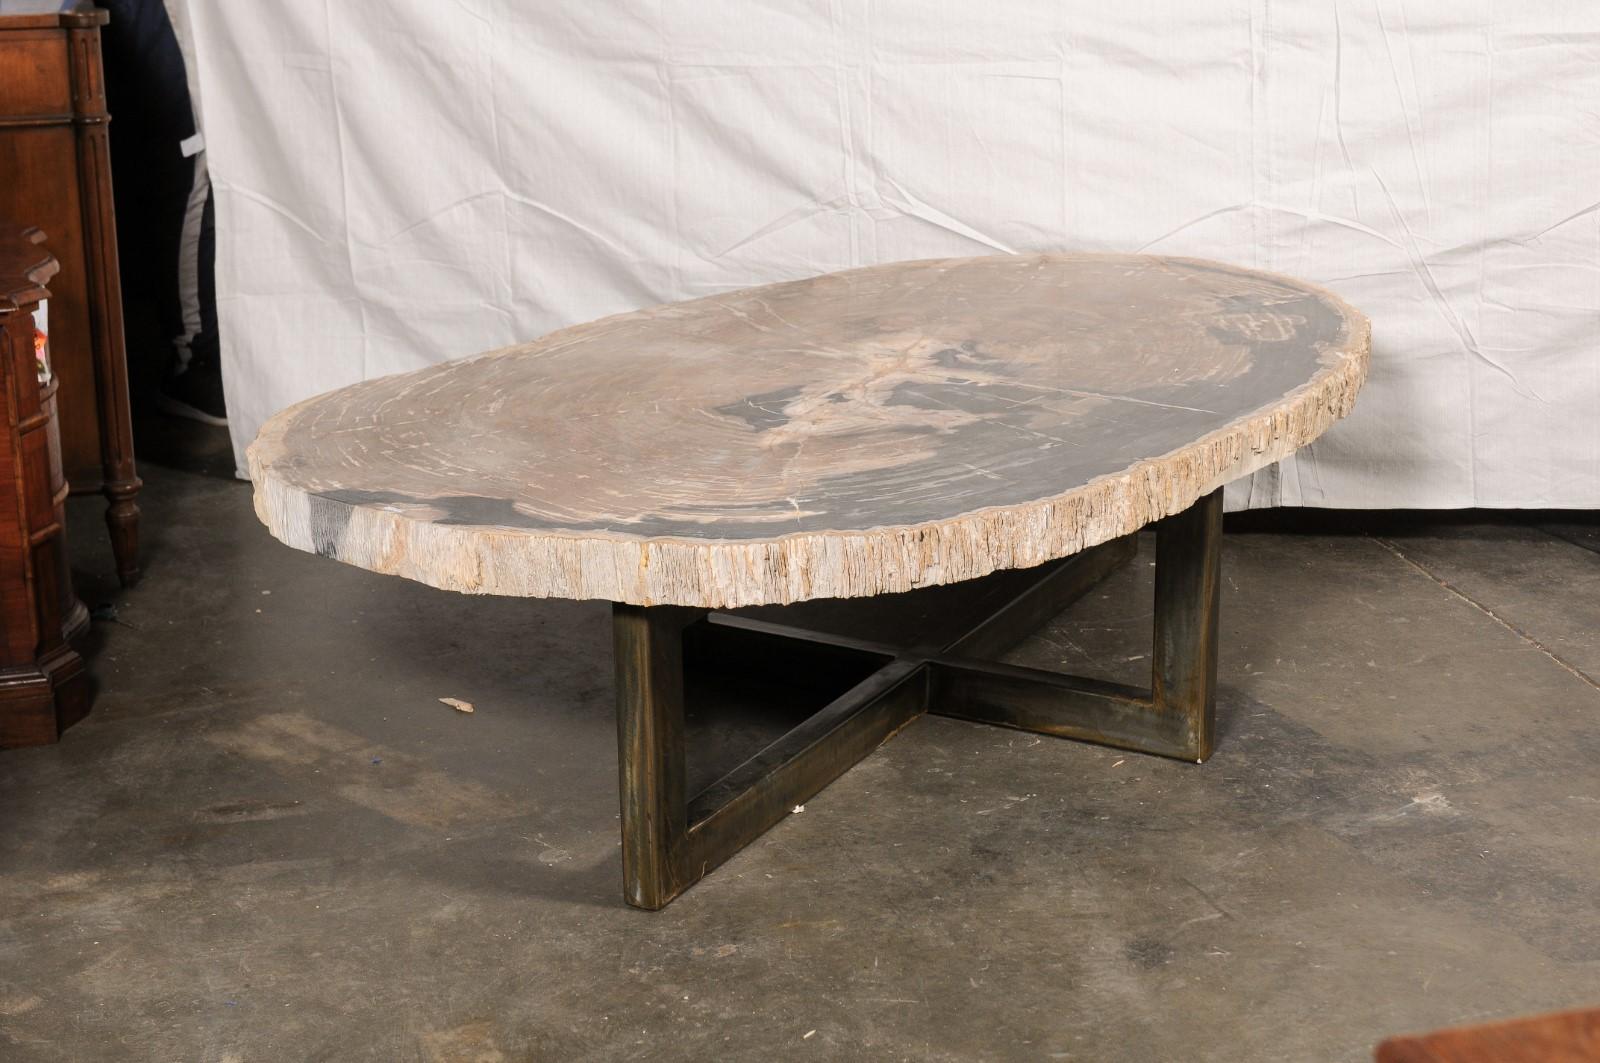 Une fabuleuse table basse en bois pétrifié avec un plateau en dalle et une base en fer. Cette table basse personnalisée a été façonnée à partir d'une pièce unique de bois pétrifié de grande taille et de forme essentiellement ovale, qui a été polie